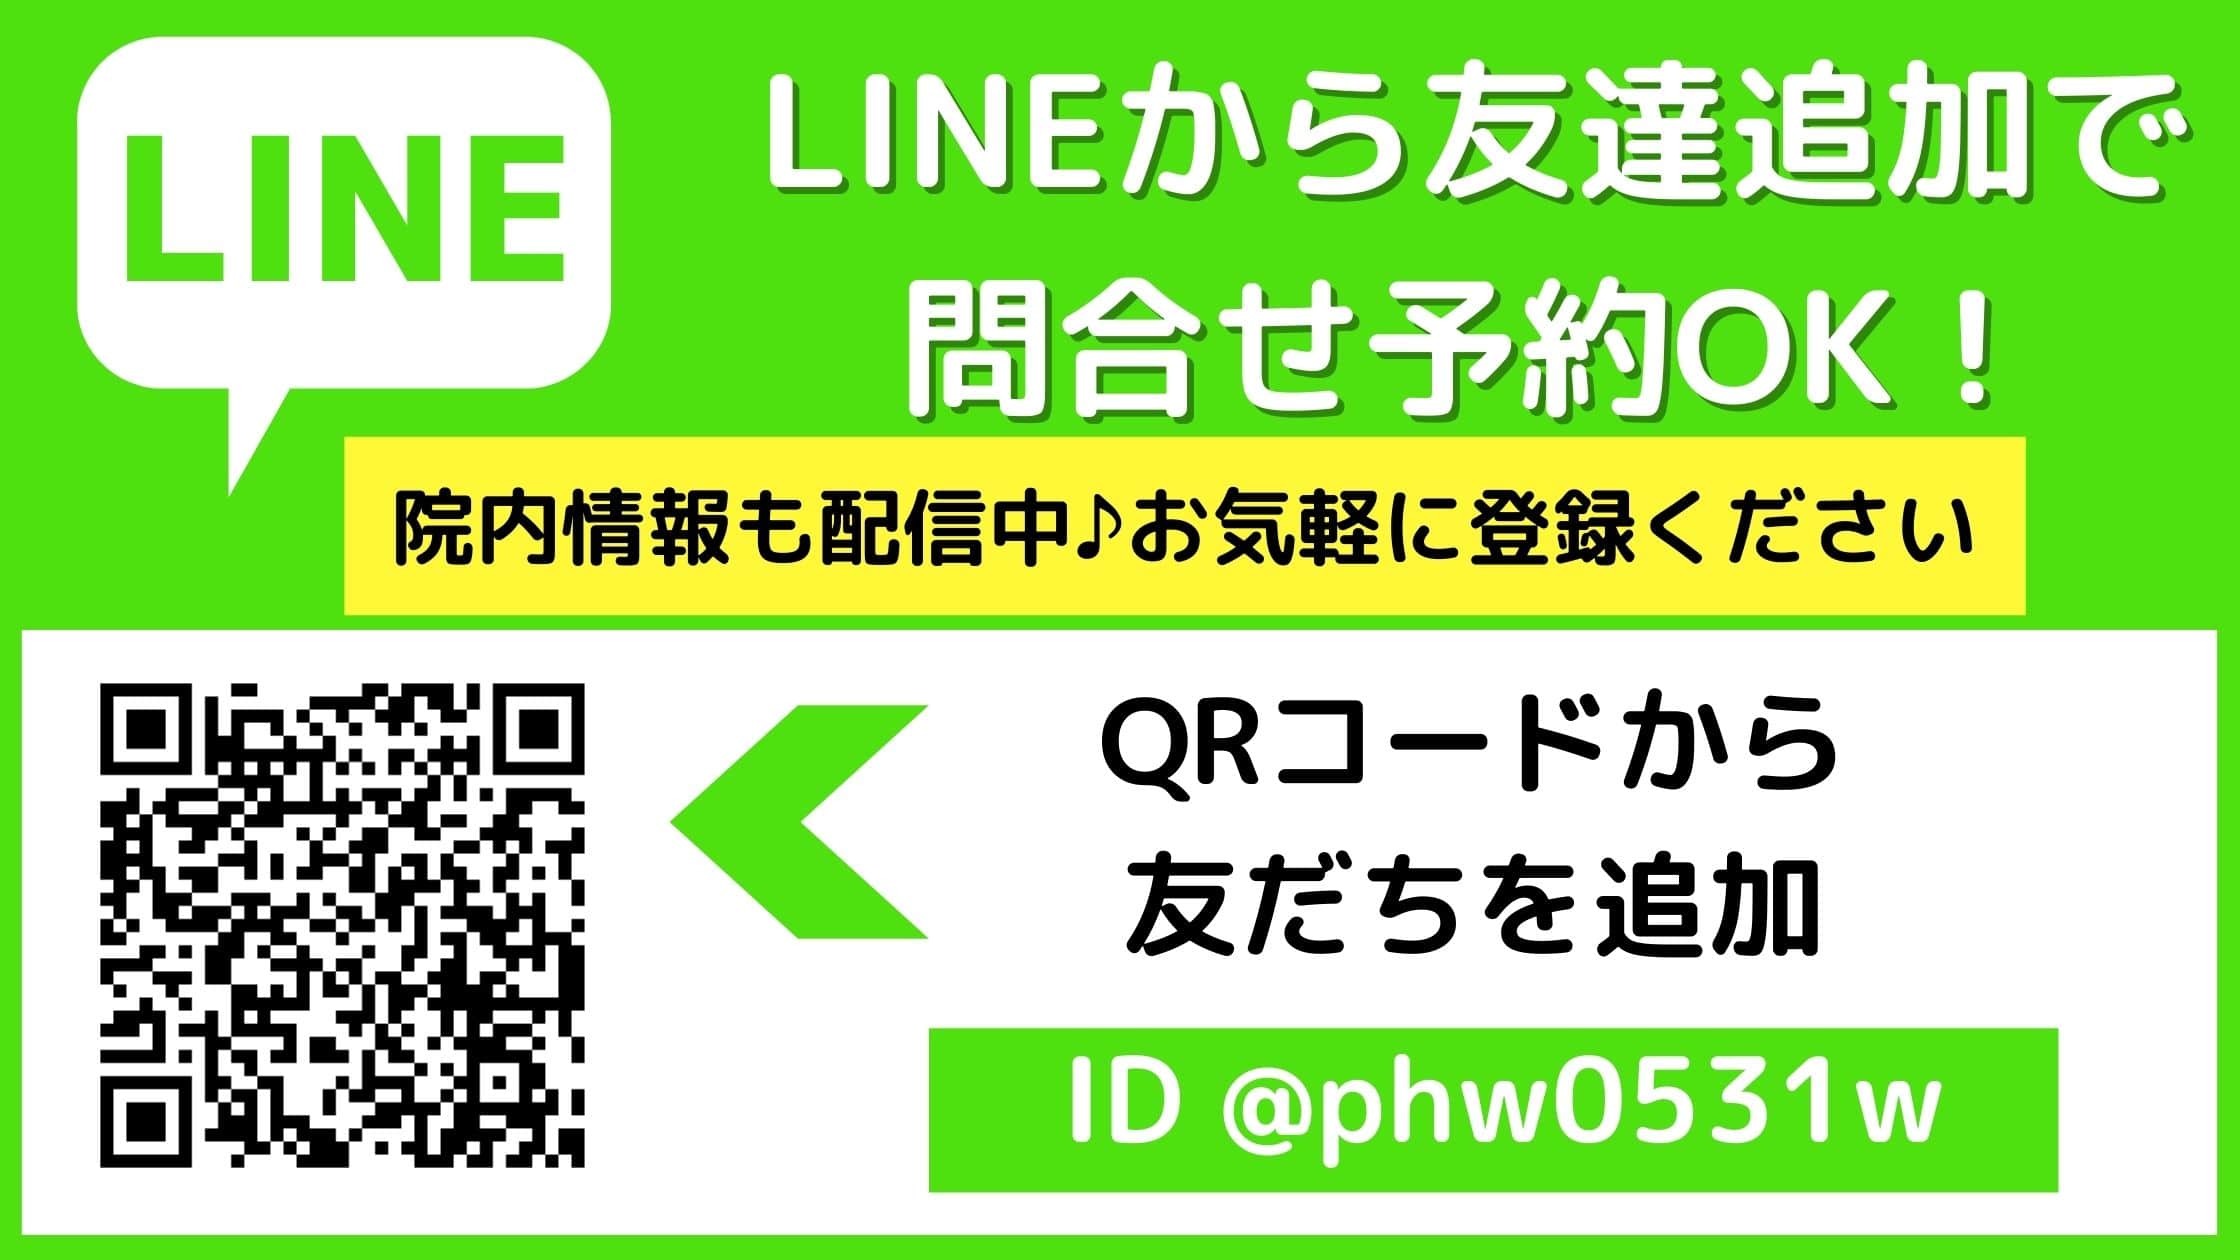 LINE-min.jpg